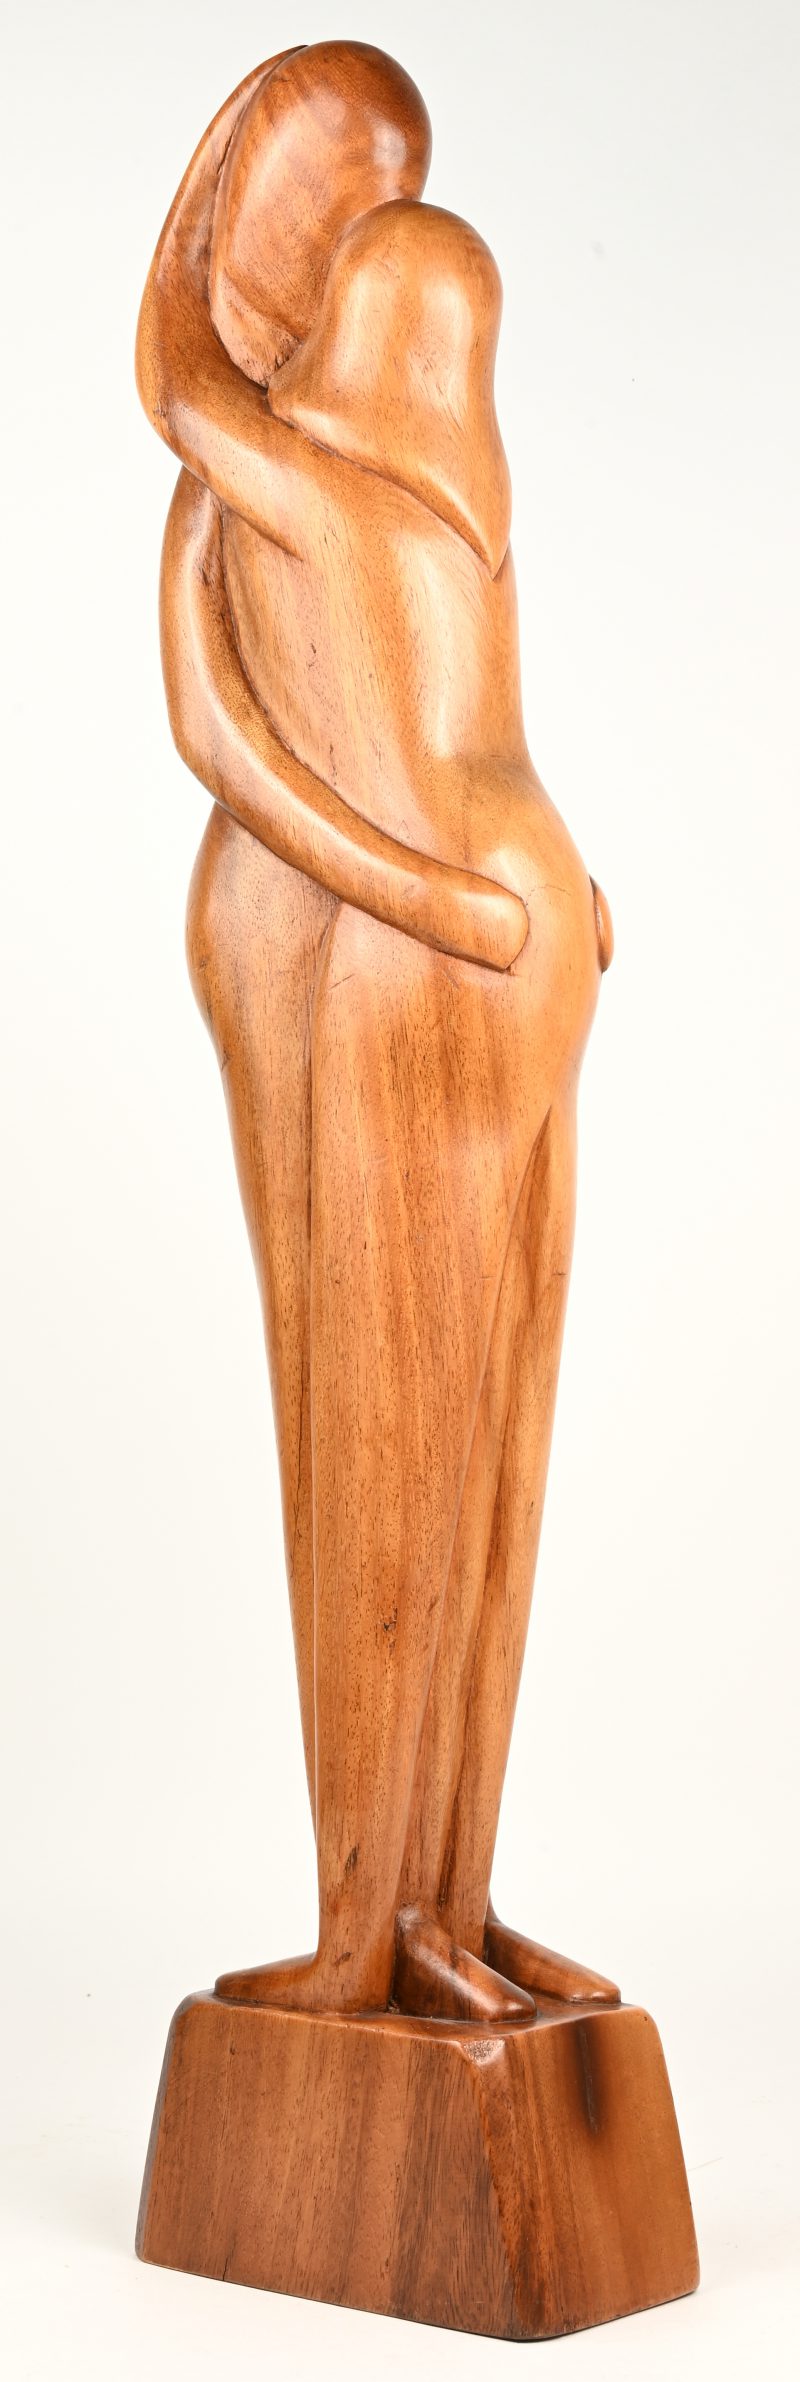 “De omhelzing”. Een houten beeldhouwwerk